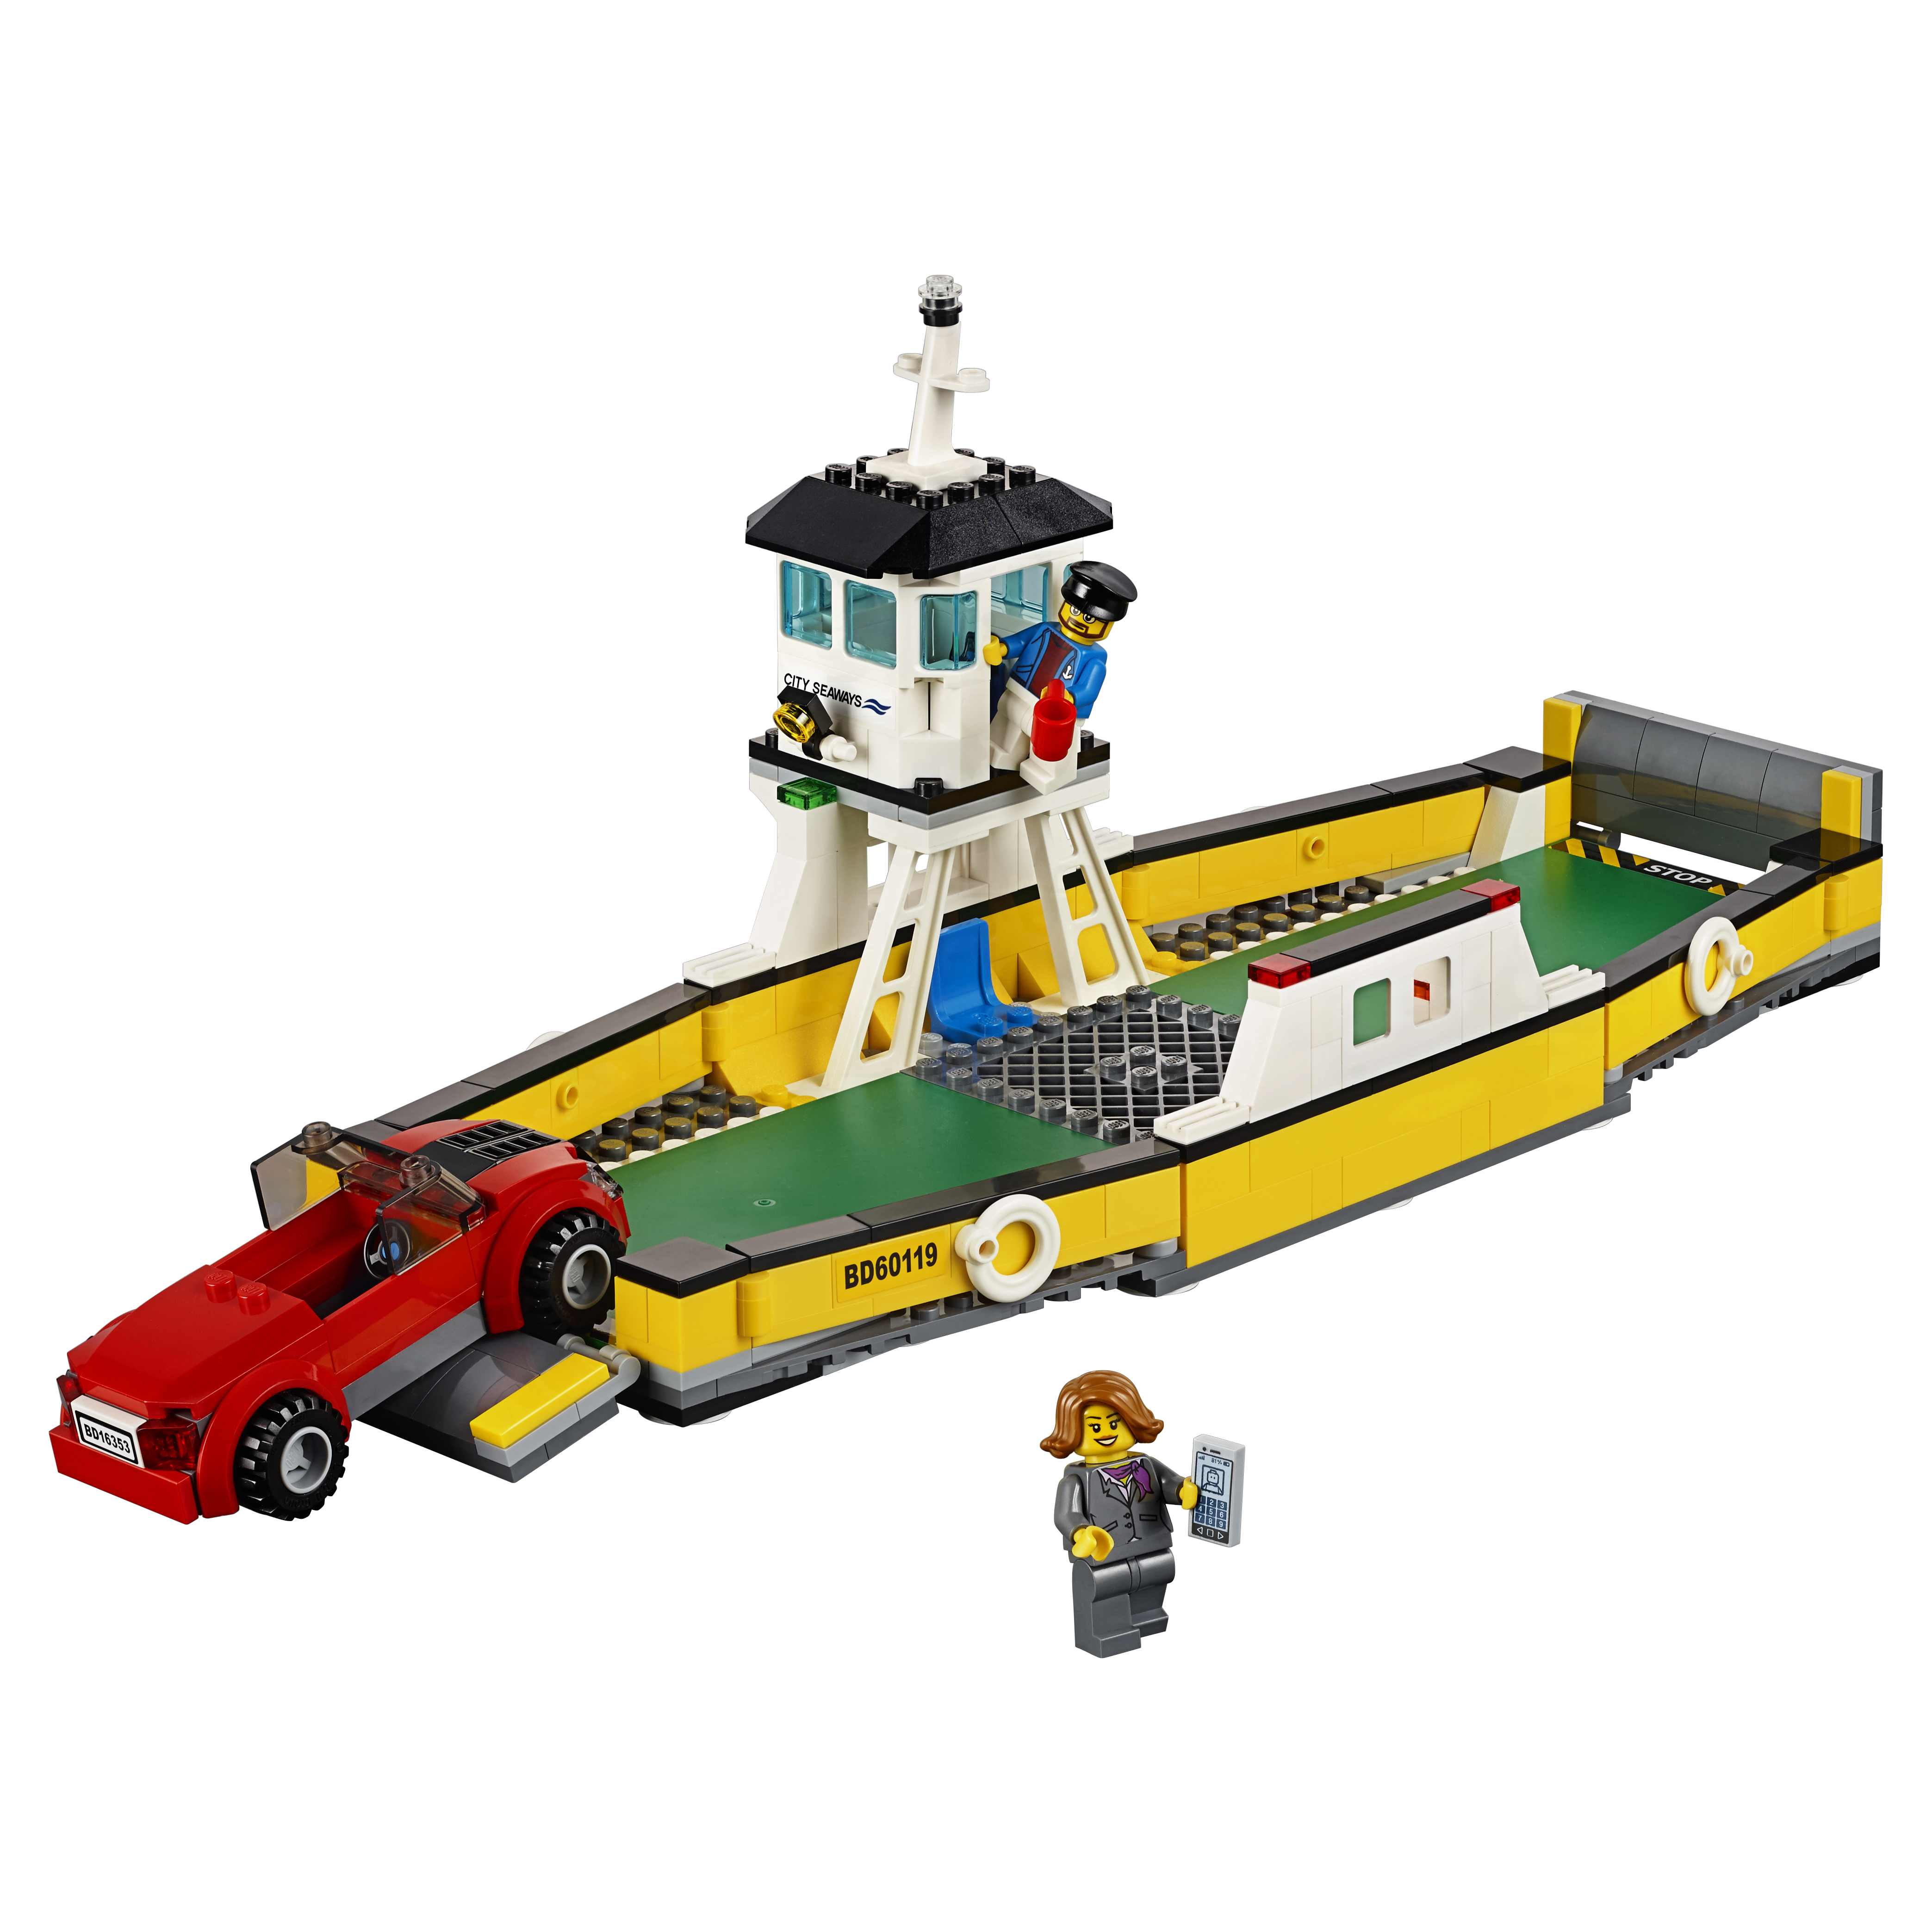 Конструктор LEGO City Great Vehicles Паром (60119) конструктор lego city great vehicles паром 60119